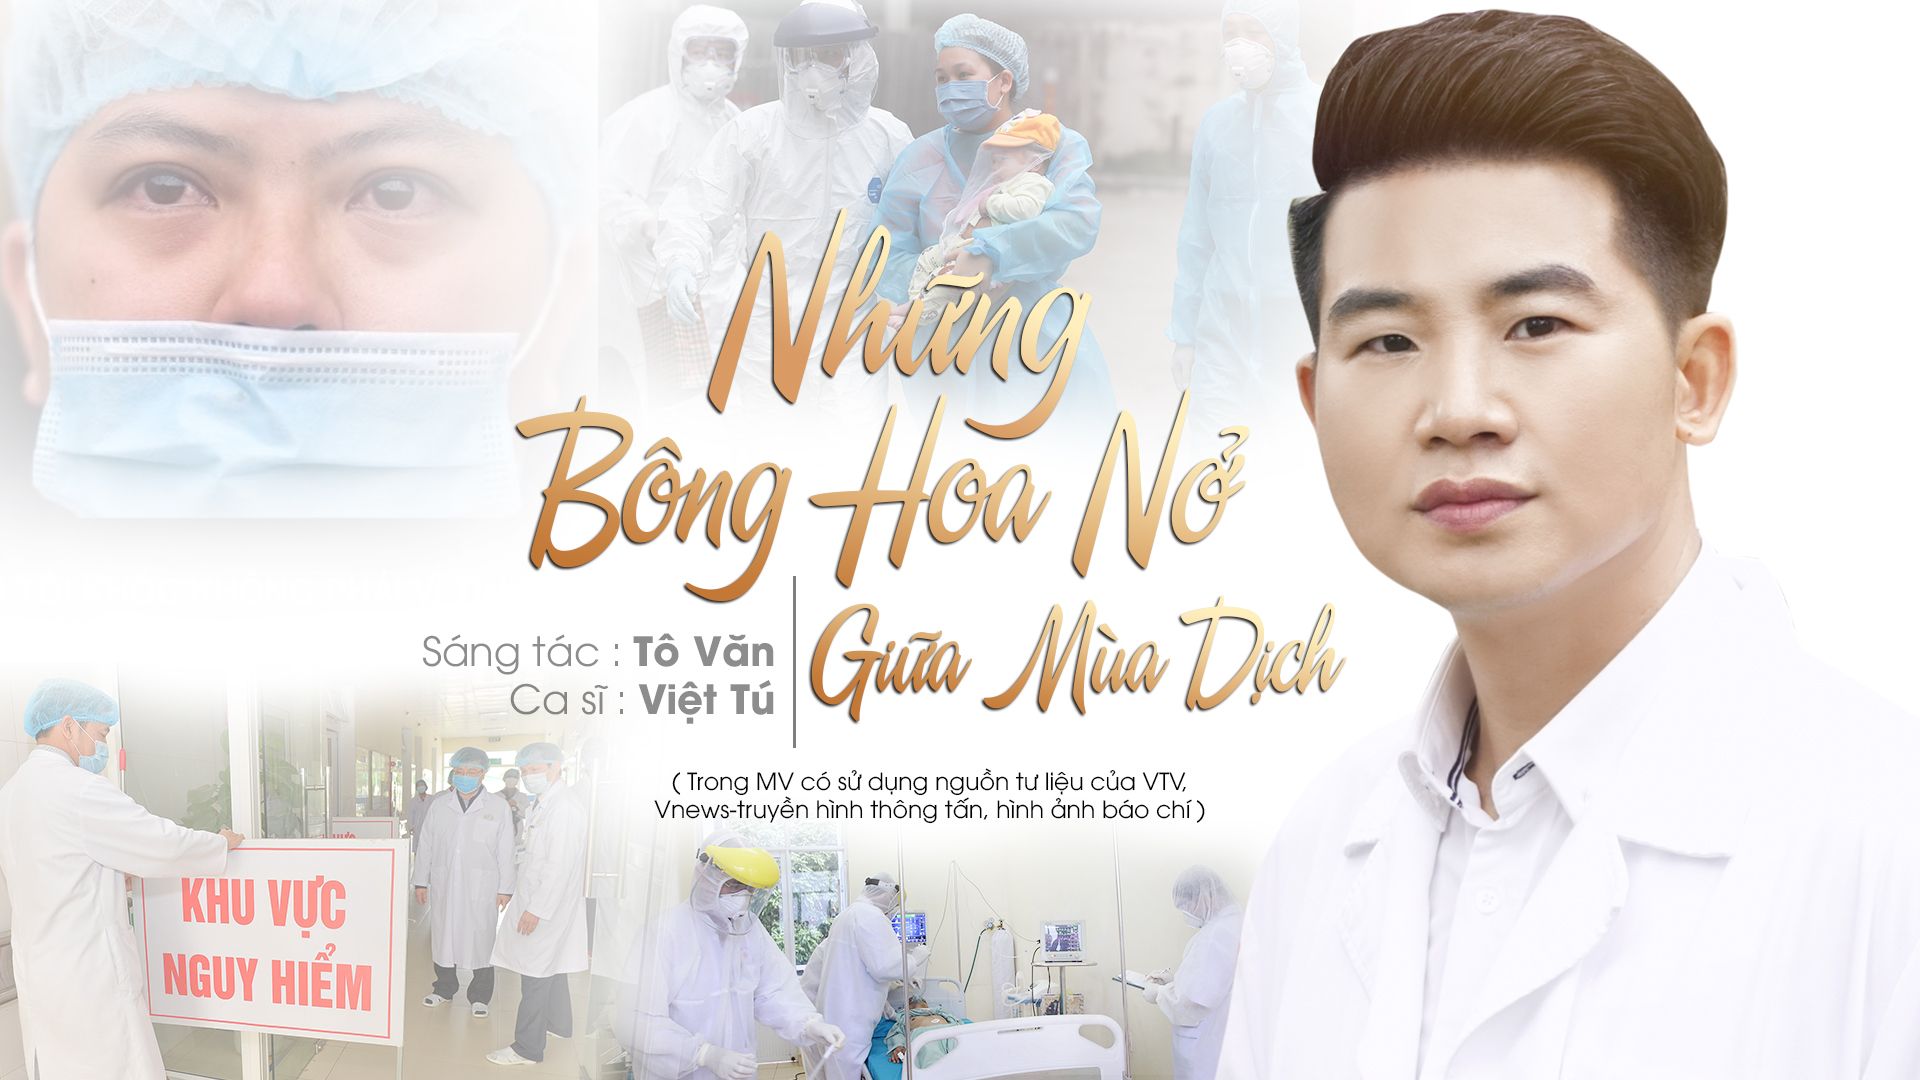 Ca sĩ Việt Tú với bài hát Những bông hoa nở giữa mùa dịch.